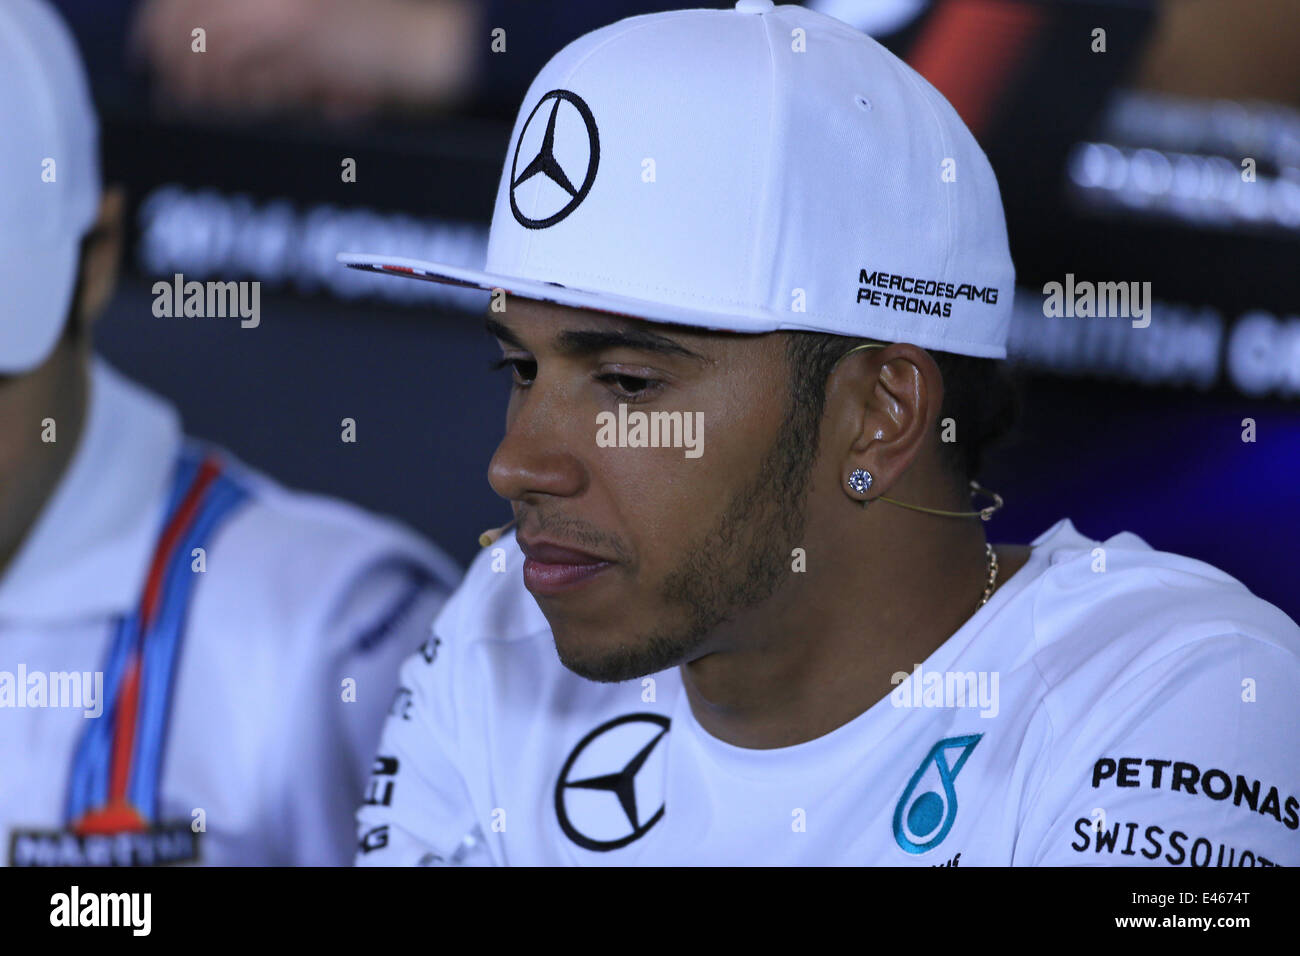 Silverstone im Vereinigten Königreich. 3. Juli 2014. Britische Formel 1 Grand Prix. Lewis Hamilton von Mercedes AMG Petronas während der Pressekonferenz Donnerstag. Bildnachweis: Aktion Plus Sport/Alamy Live-Nachrichten Stockfoto